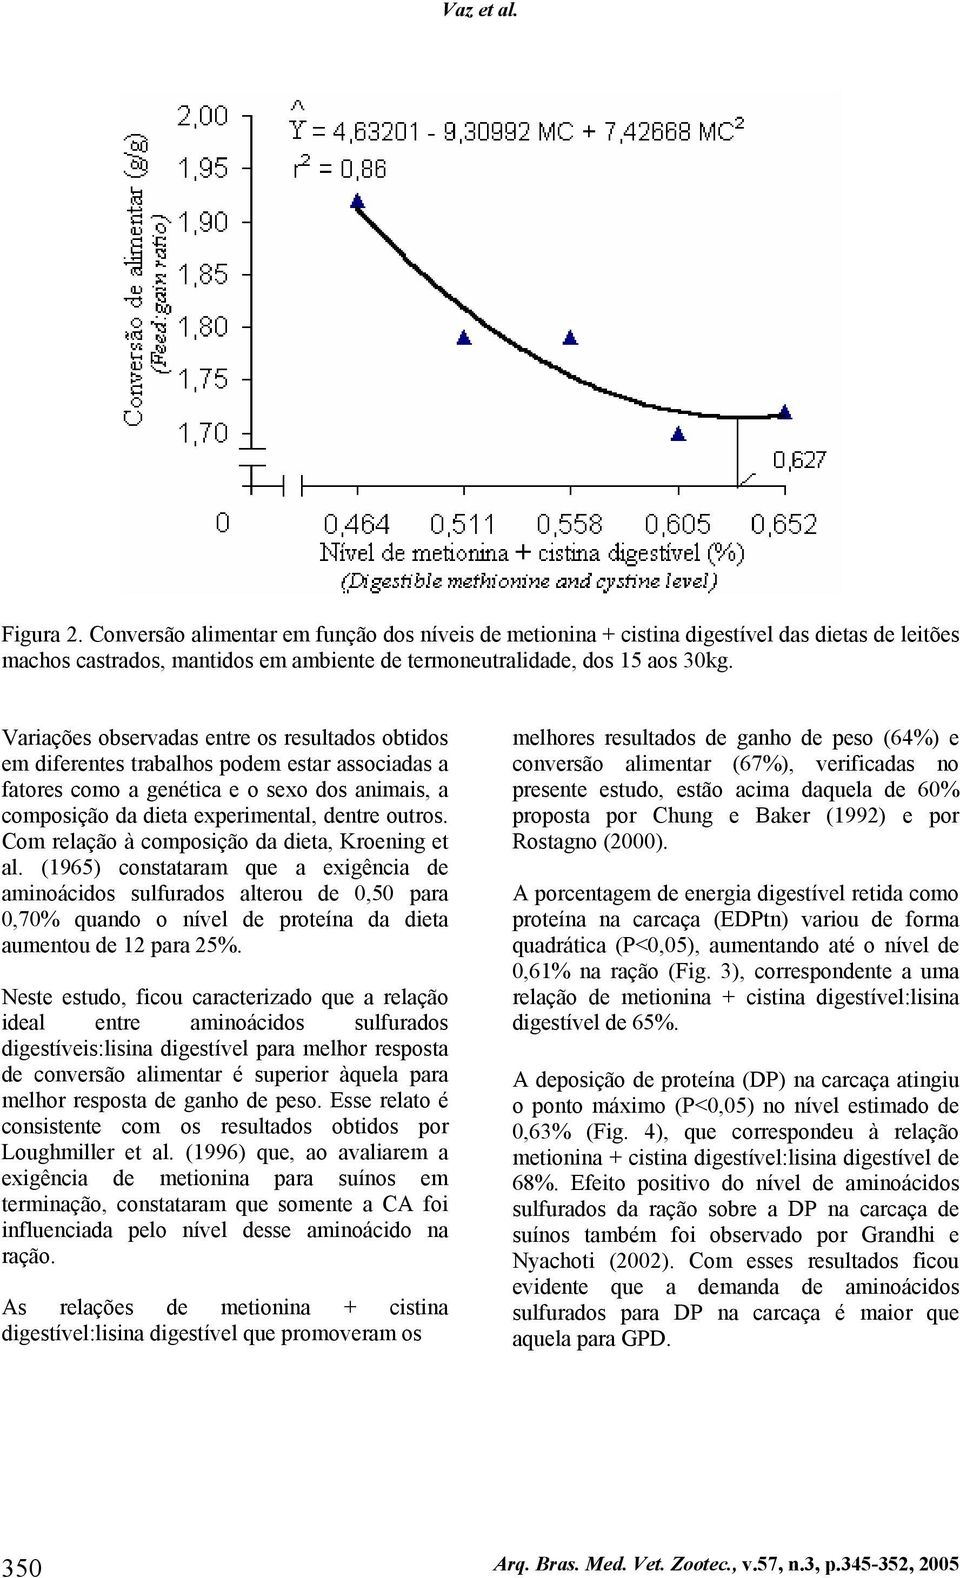 Com relação à composição da dieta, Kroening et al. (1965) constataram que a exigência de aminoácidos sulfurados alterou de 0,50 para 0,70% quando o nível de proteína da dieta aumentou de 12 para 25%.